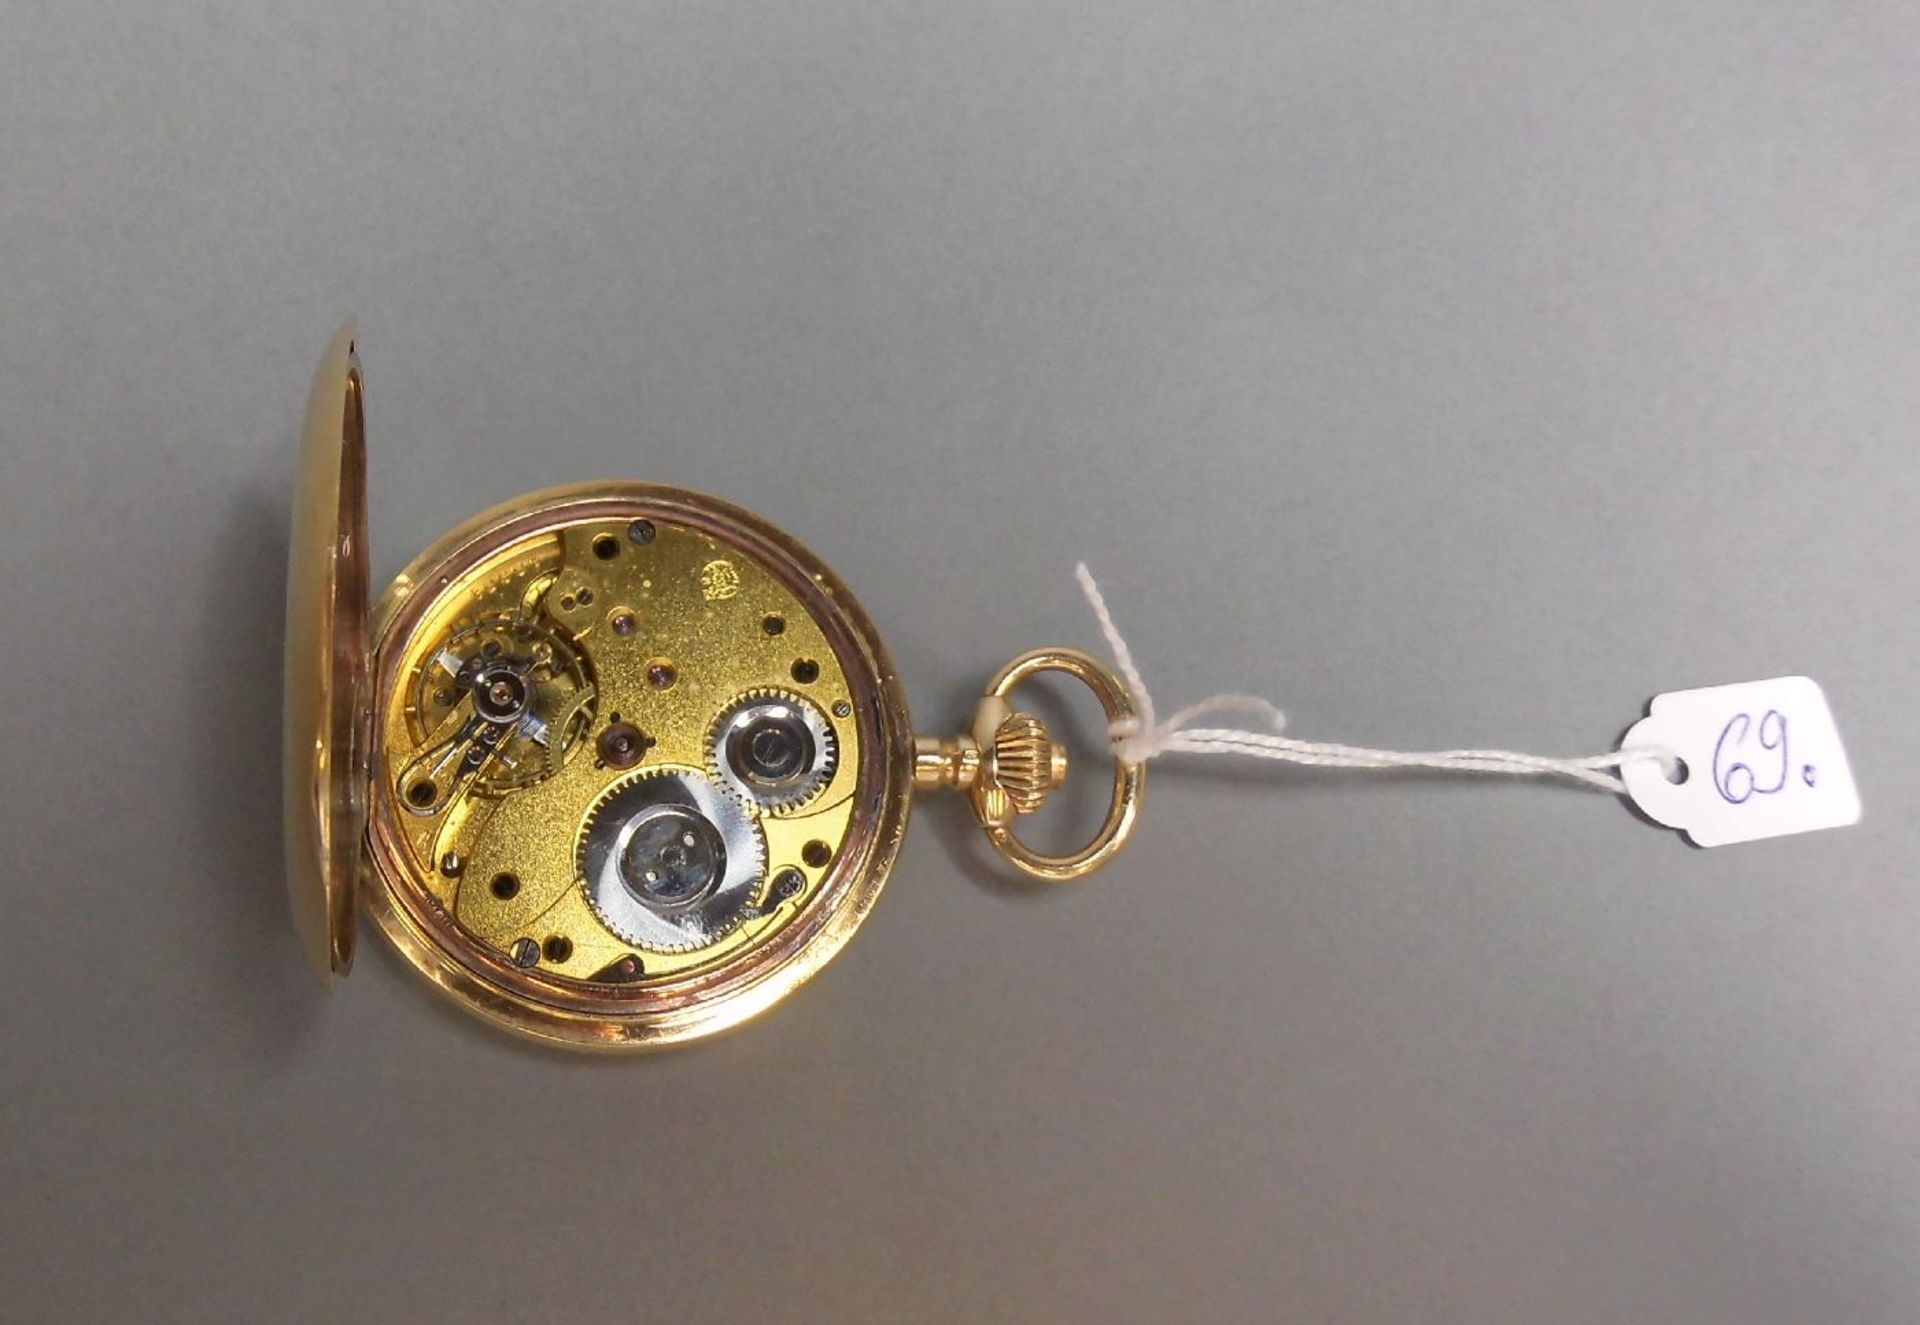 TASCHENUHR / pocketwatch, 14 kt. Gold, Staubdeckel Metall. Weißes Zifferblatt, kleine Sekunde bei - Image 3 of 7